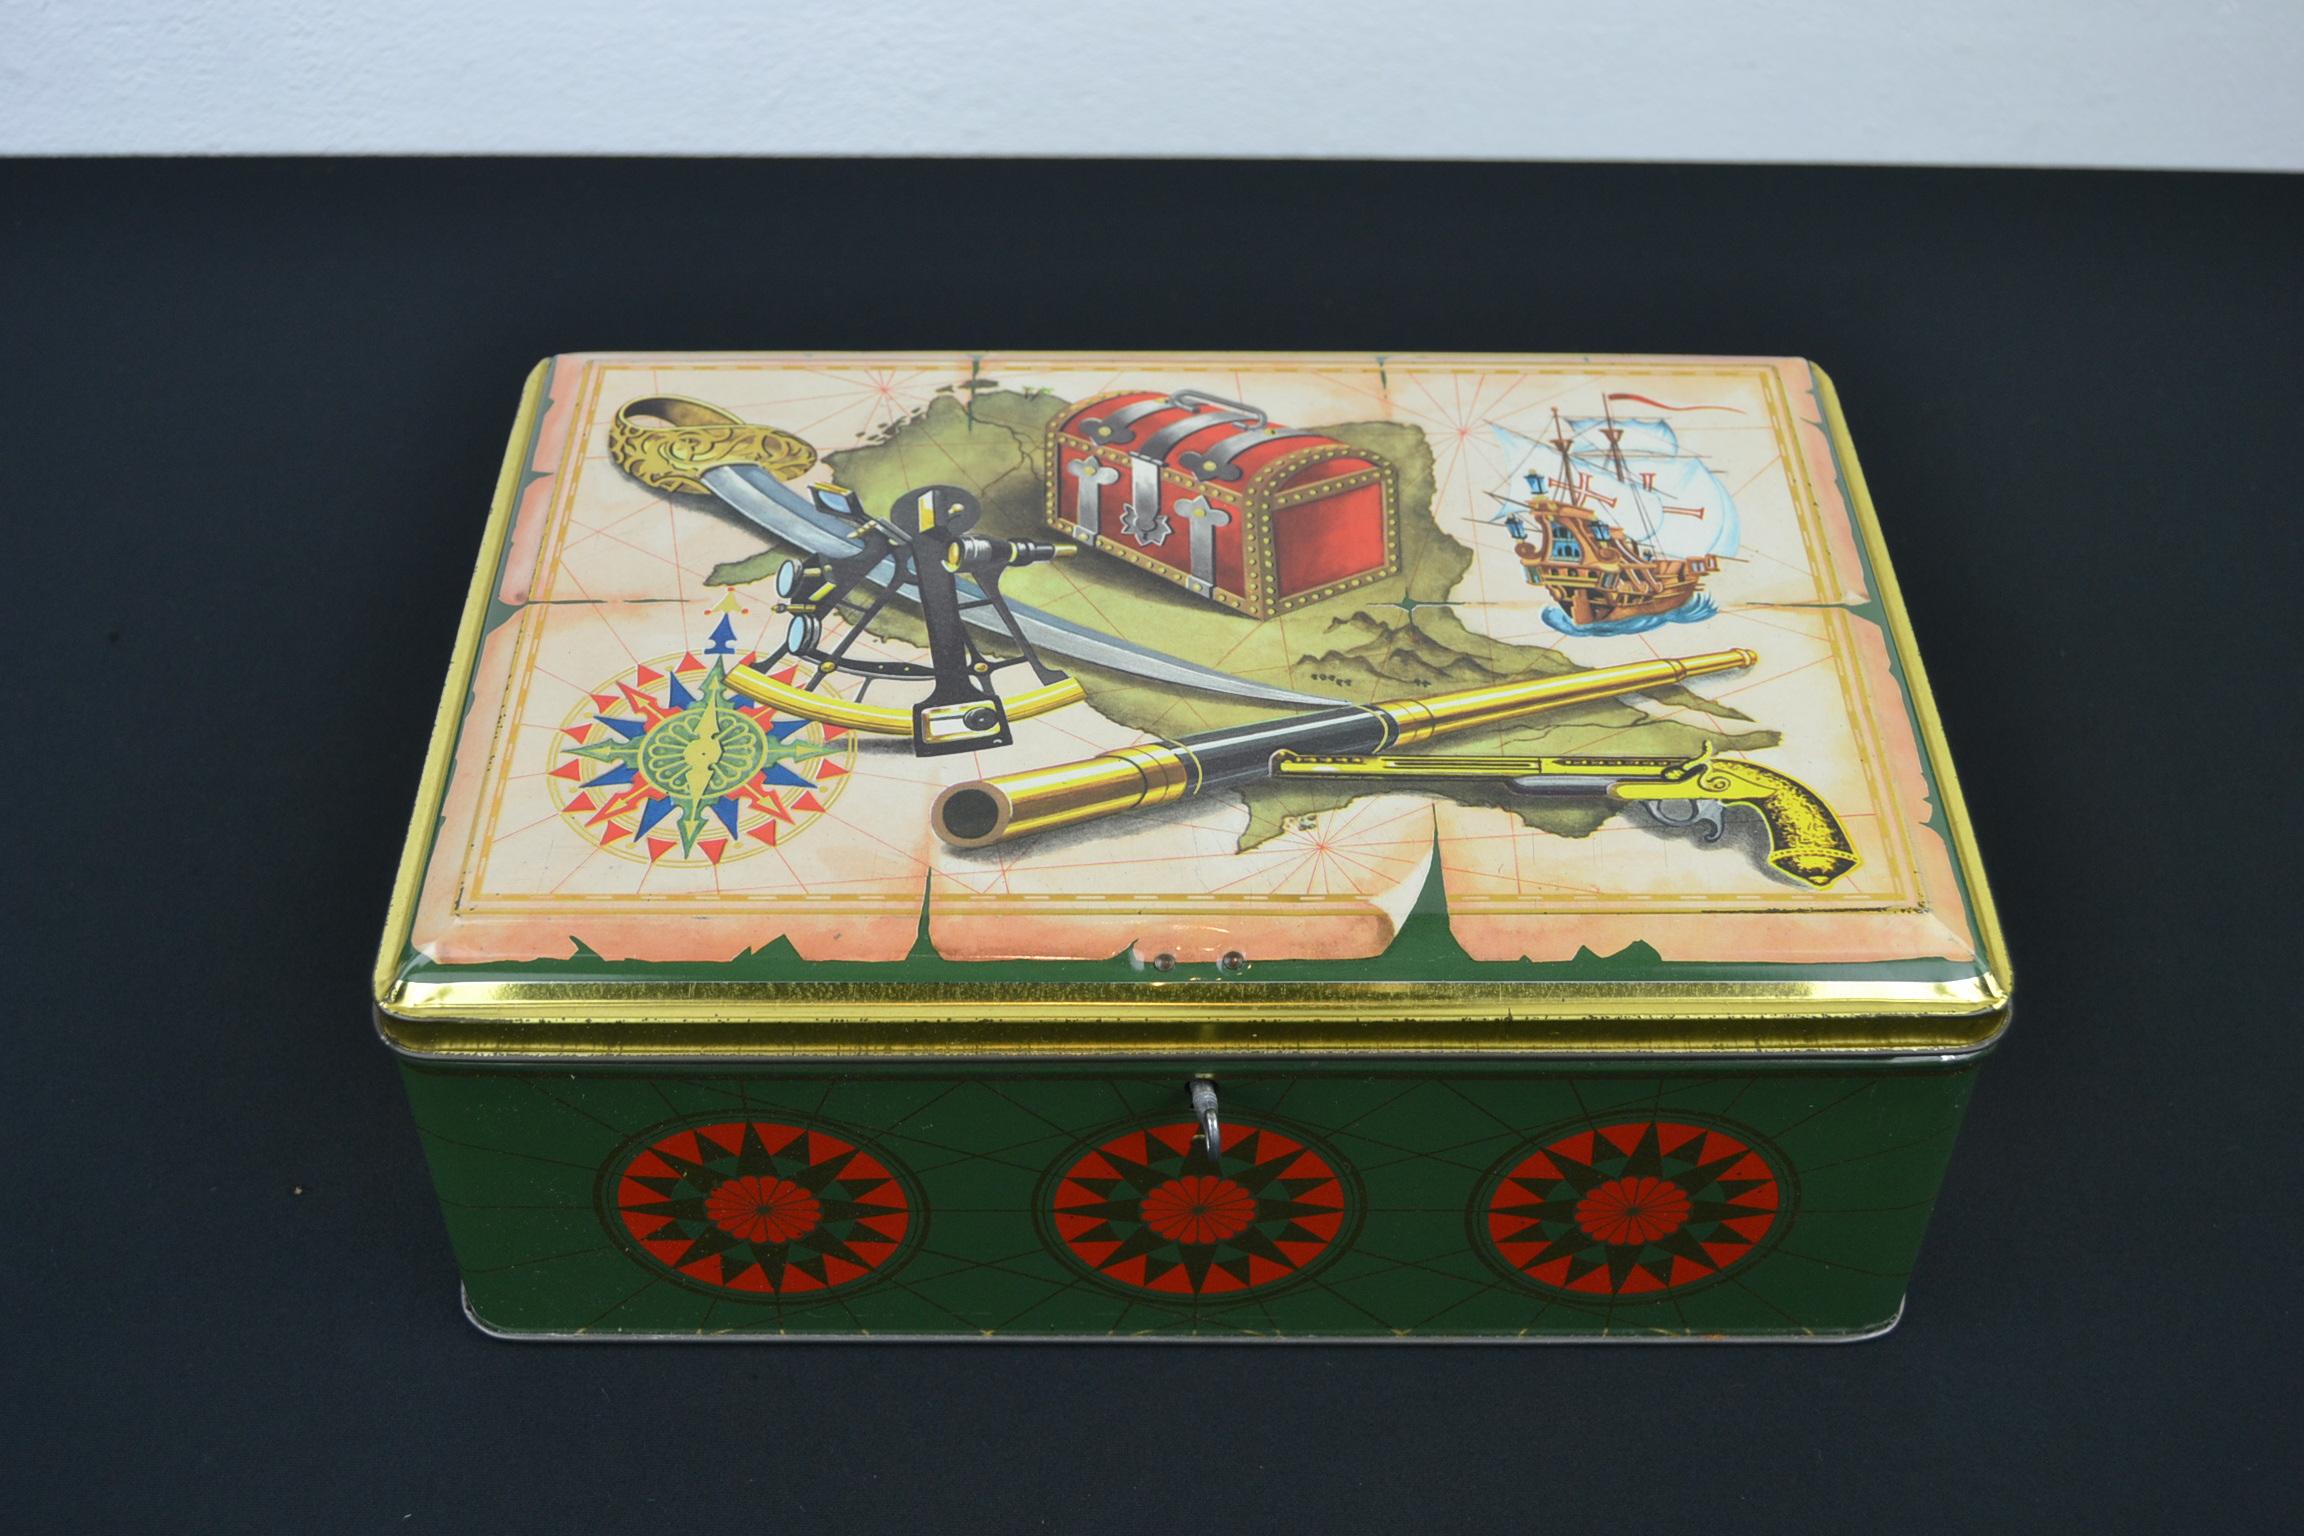 Vintage Keksdose Thema Piraten - Piraterie.
Diese Blechdose aus den 1950er Jahren ist eine tolle Deko- oder Aufbewahrungsbox mit schönem Design aus dem Material des Seerovers:
piratenschiff, Karte, Kompass, Fernglas oder Teleskop, Pistole,